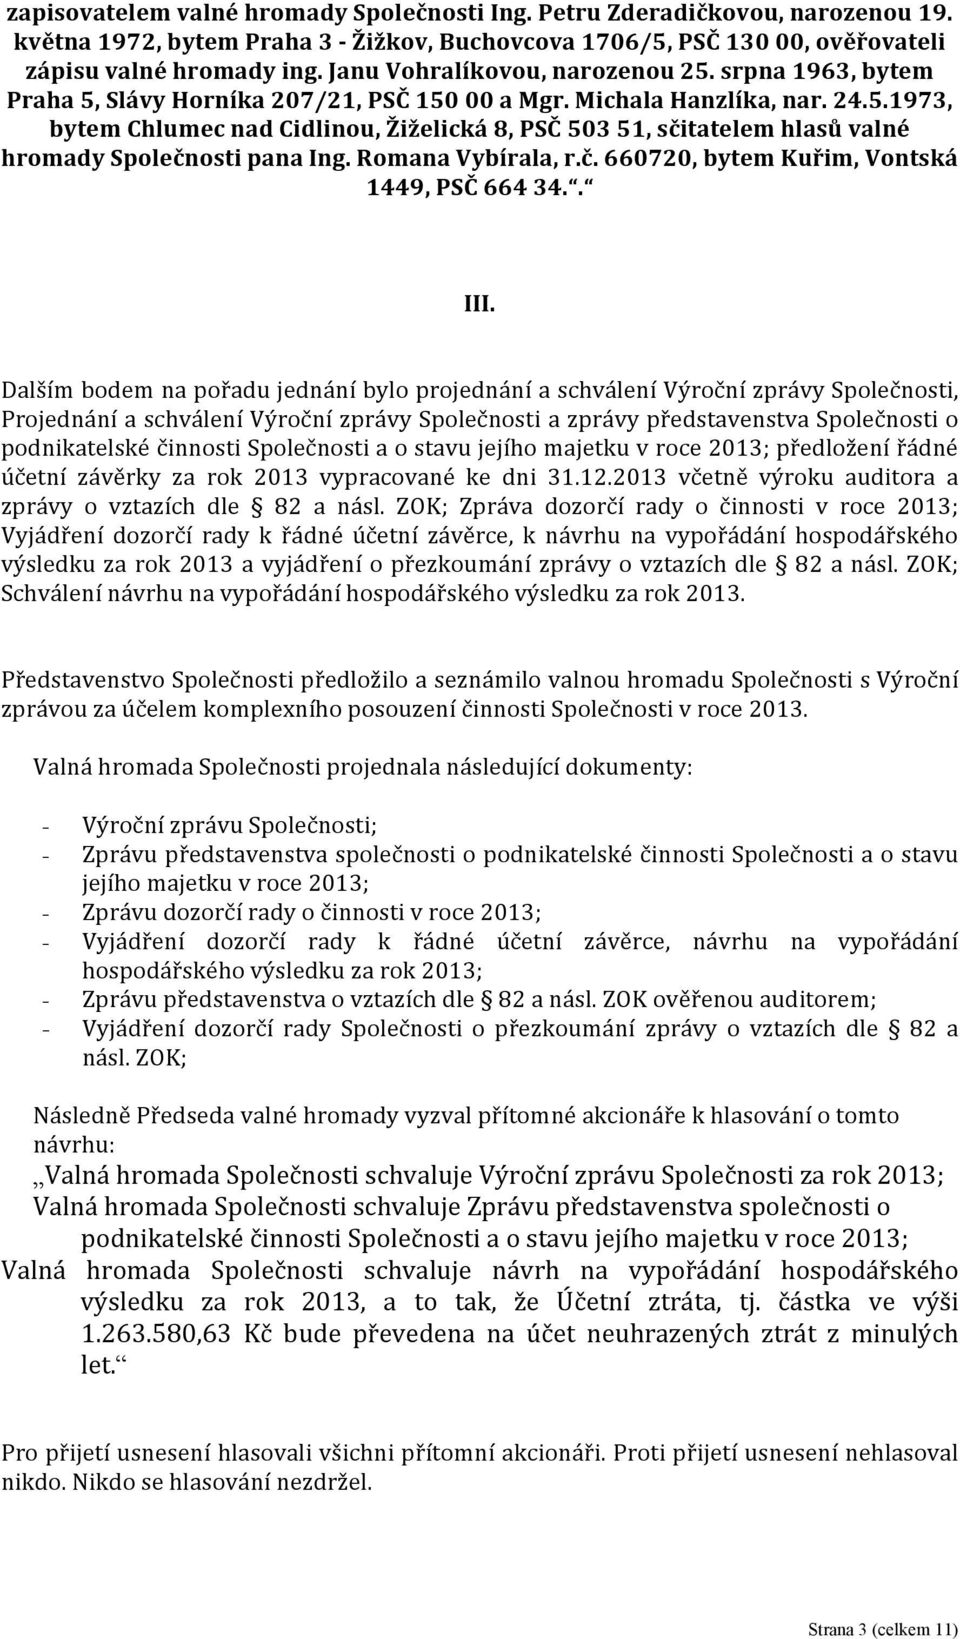 Romana Vybírala, r.č. 660720, bytem Kuřim, Vontská 1449, PSČ 664 34.. III.